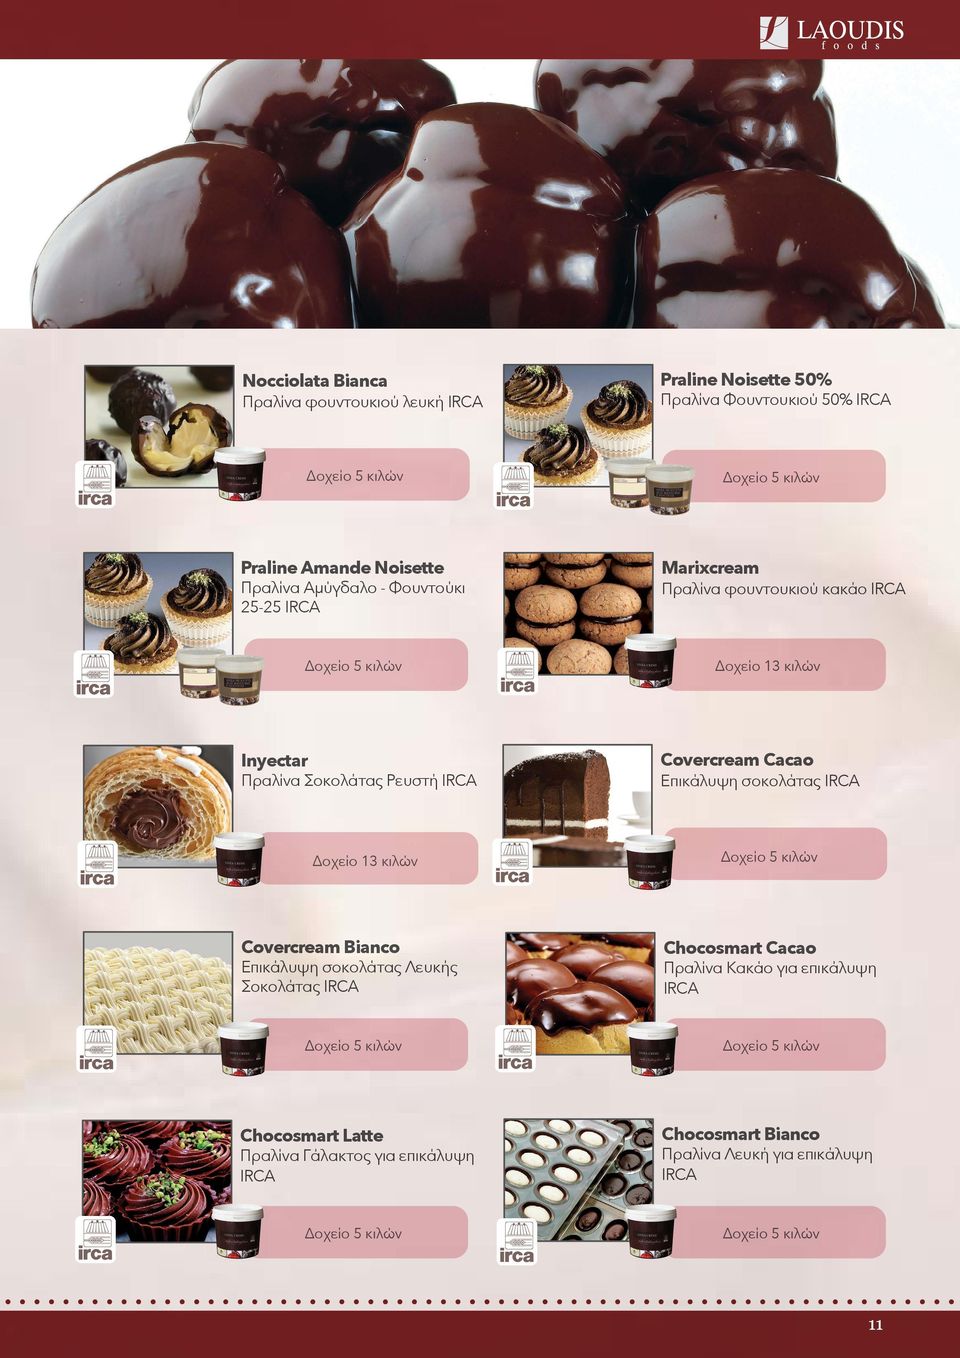 Επικάλυψη σοκολάτας IRCA Δοχείο 13 κιλών Δοχείο 5 κιλών Covercream Bianco Επικάλυψη σοκολάτας Λευκής Σοκολάτας IRCA Chocosmart Cacao Πραλίνα Κακάο για επικάλυψη